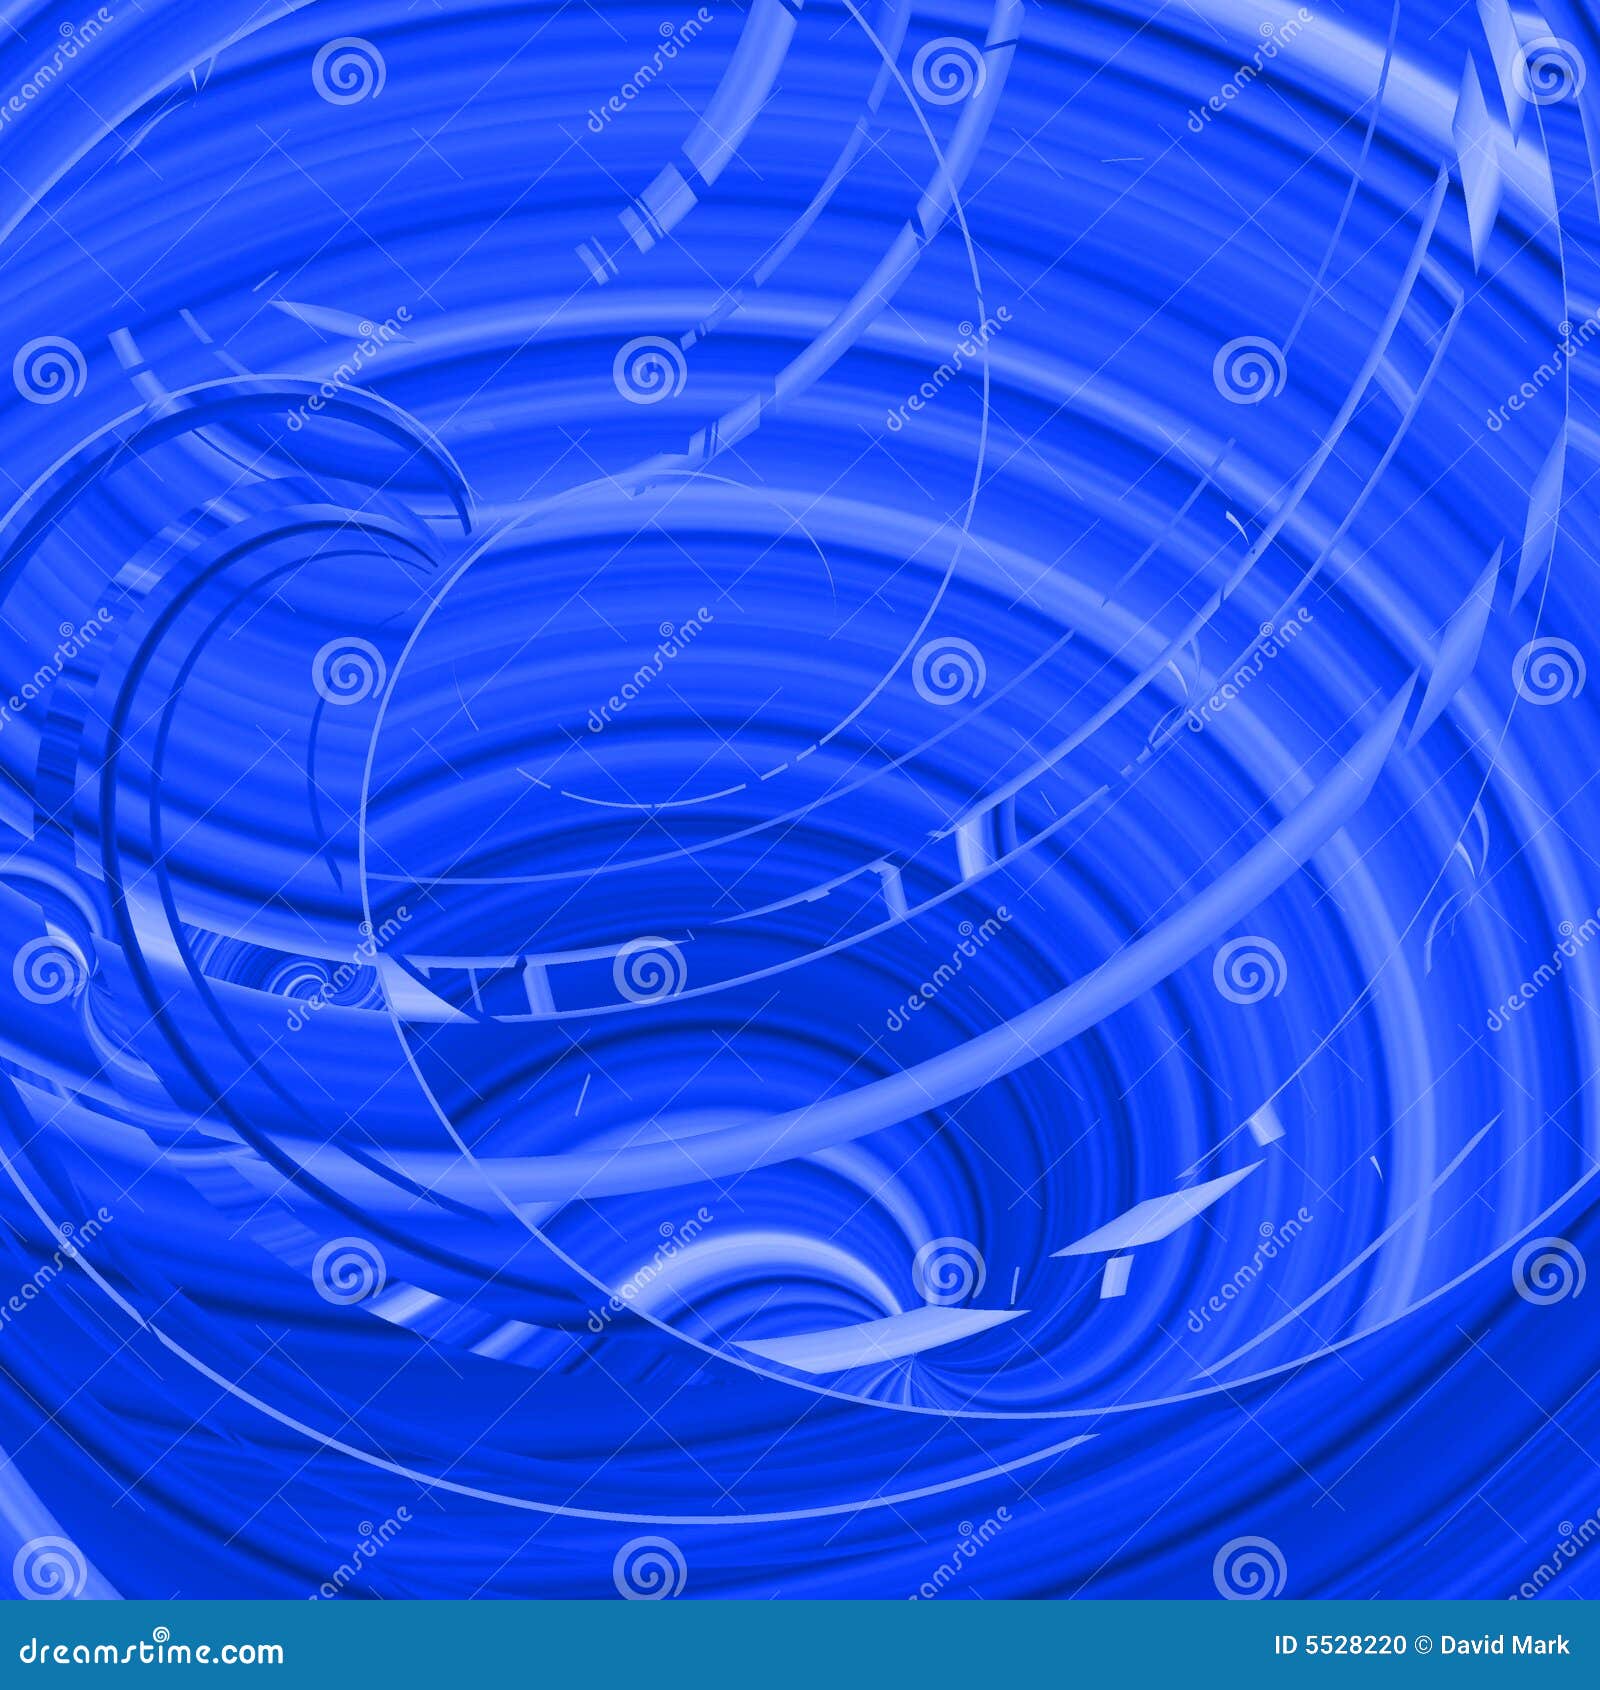 Blue Tornado stock illustration. Illustration of curves - 5528220